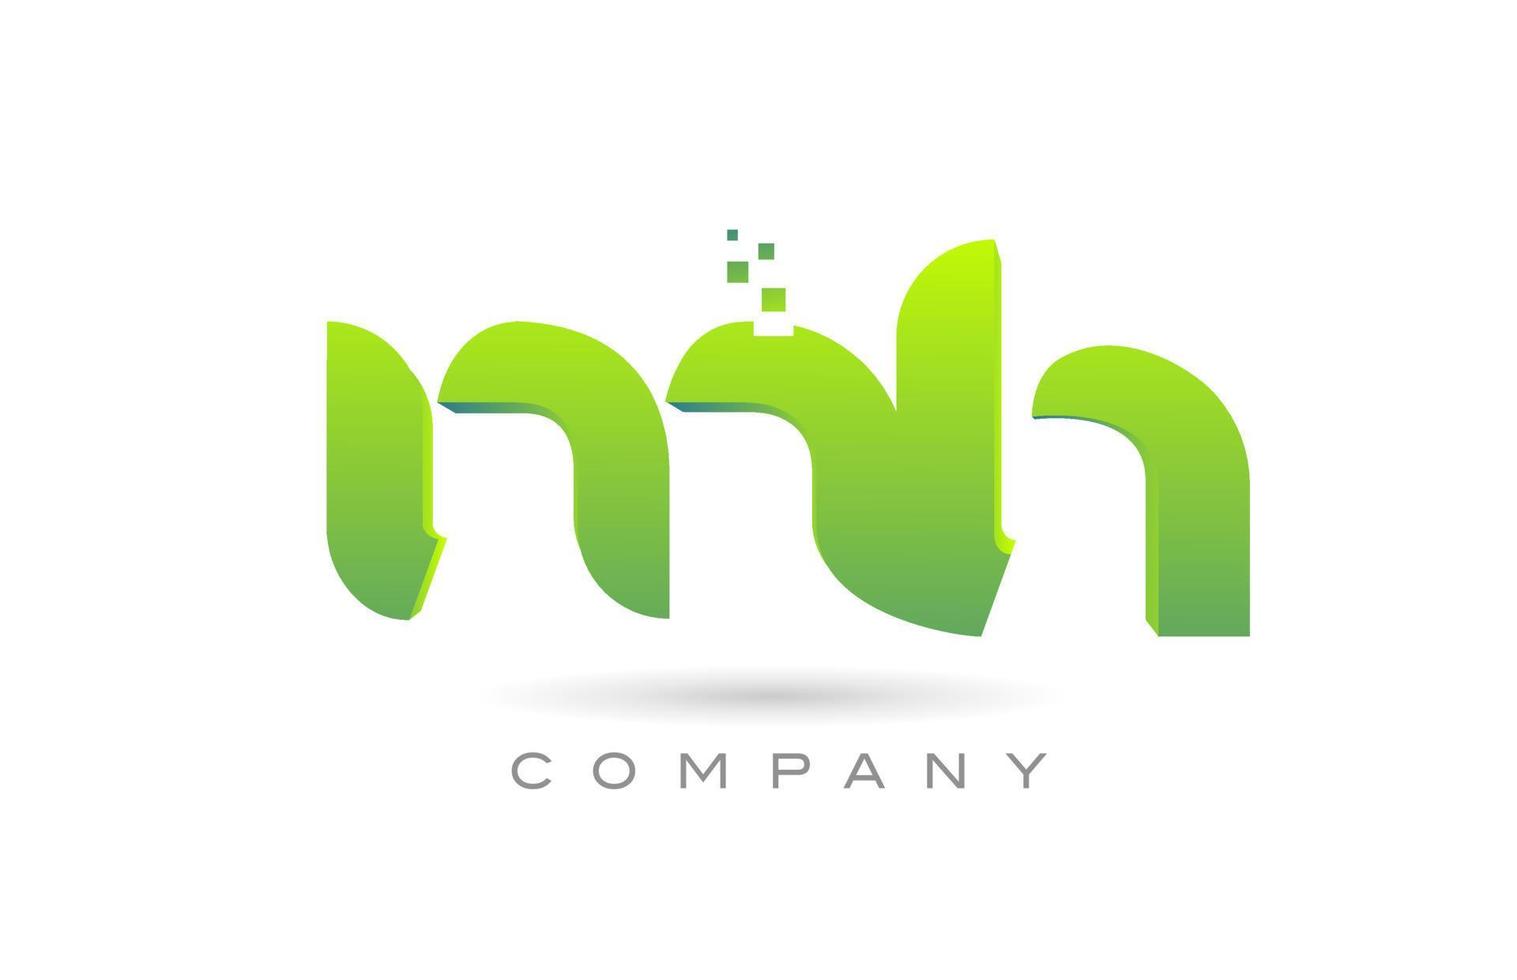 beigetretenes mh-Alphabet-Buchstaben-Logo-Symbol-Kombinationsdesign mit Punkten und grüner Farbe. kreative Vorlage für Unternehmen und Unternehmen vektor